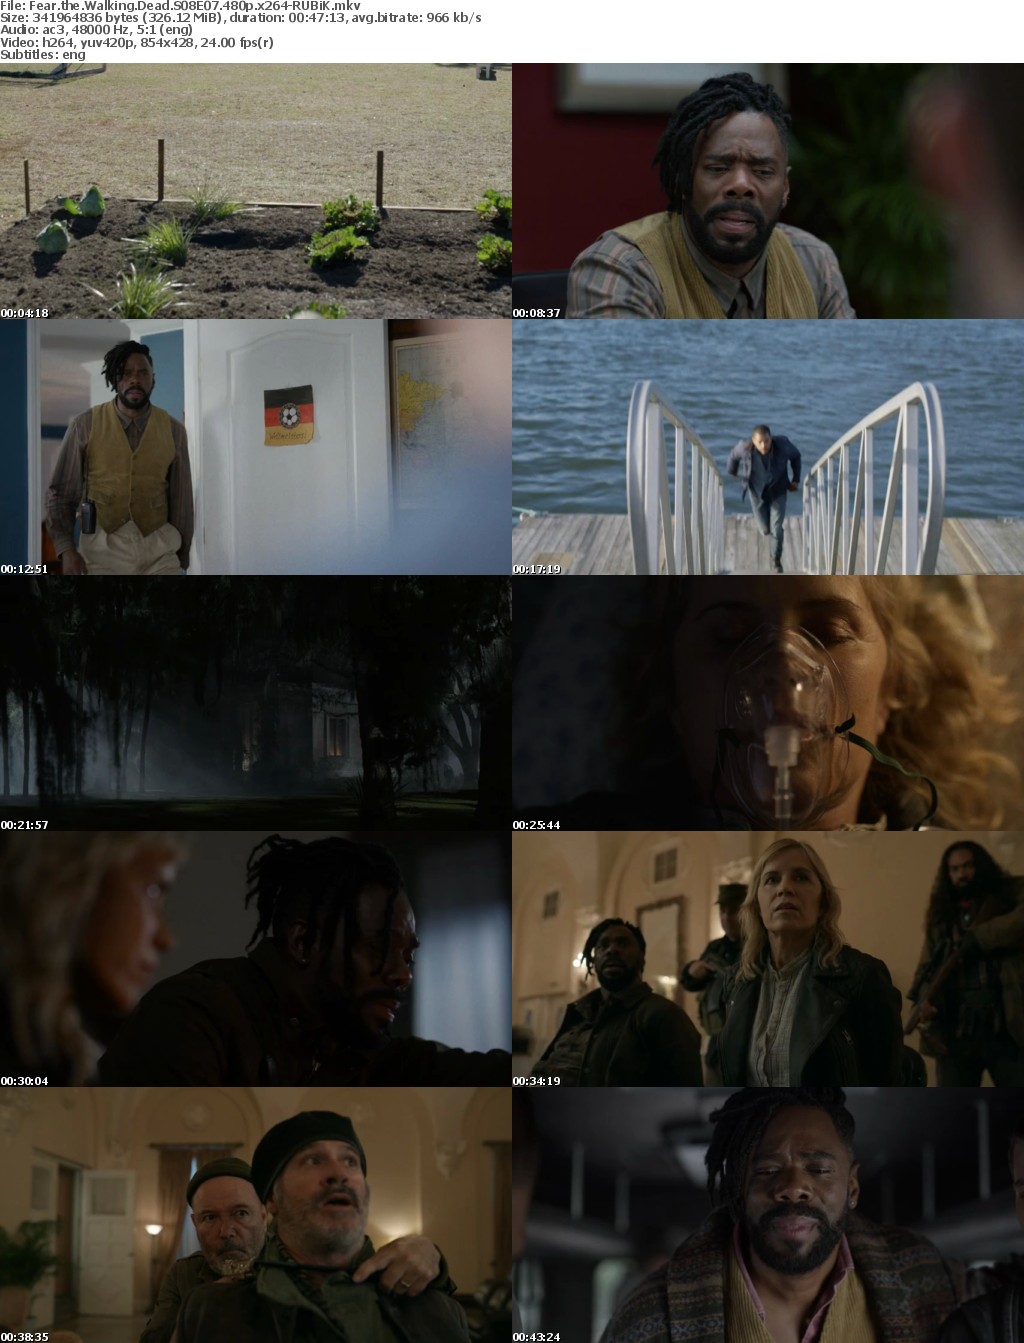 Fear the Walking Dead S08E07 480p x264-RUBiK Saturn5